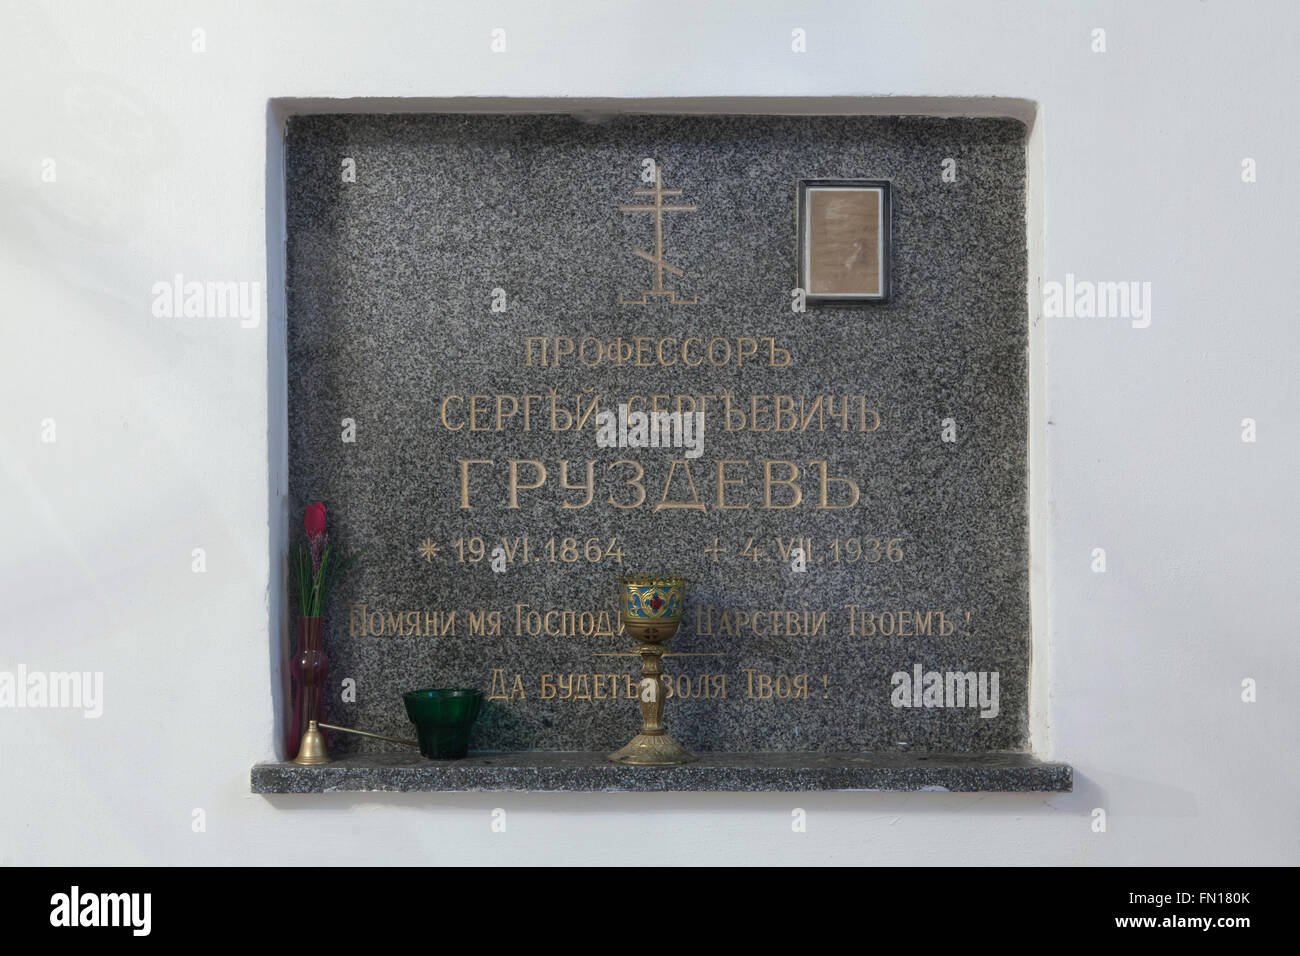 Grab des russischen Professor Sergey Gruzdev in der unterirdischen Krypta der Dormitio-Kirche auf dem Friedhof Olsany in Prag, Tschechien. Prof. Sergej Sergejewitsch Gruzdev, geboren am 19. Juni 1864, lebte im Exil in der Tschechoslowakei nach der bolschewistischen Revolution und starb im Alter von 72 Jahren am 4. Juli 1936. Die Dormitio-Kirche auf dem Friedhof Olšany wurde 1924-1925 von der russischen weißen Emigranten gebaut. Die unterirdische Krypta diente als Begräbnisstätte für die wichtigsten Personen der russischen Emigration in der Tschechoslowakei. Stockfoto